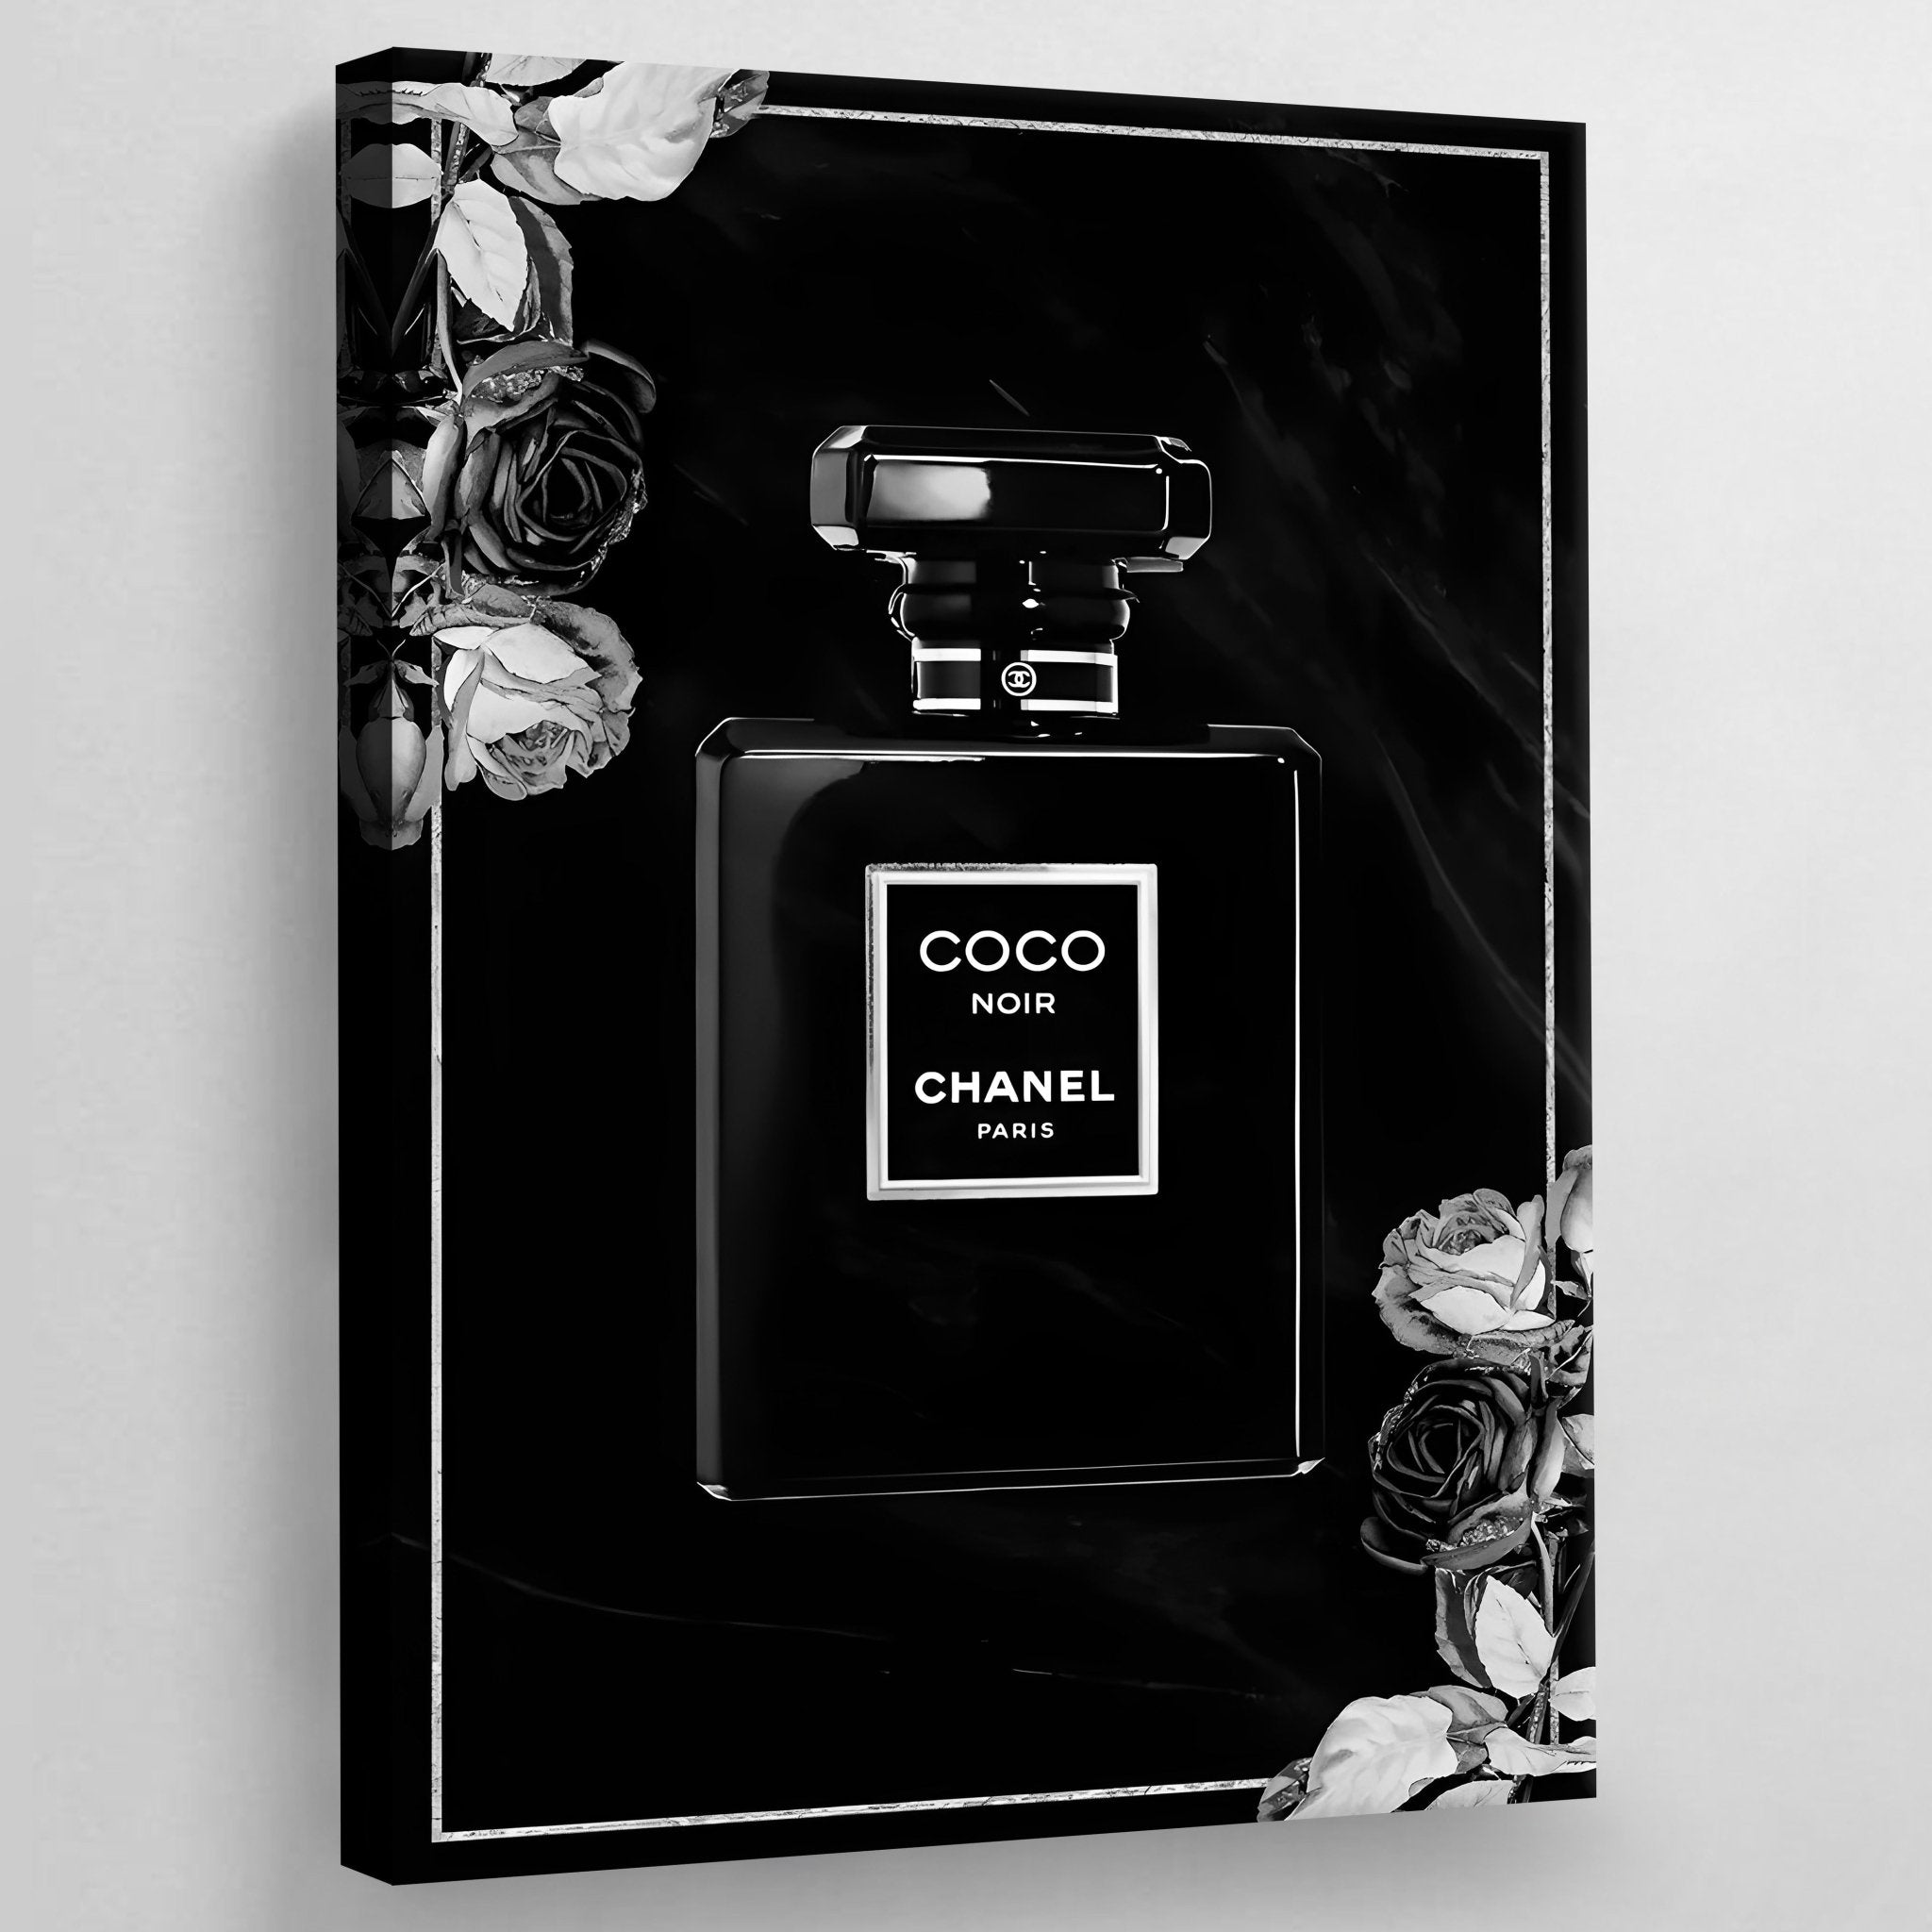 Chanel Perfume Bottle Framed Art Prints for Sale - Fine Art America